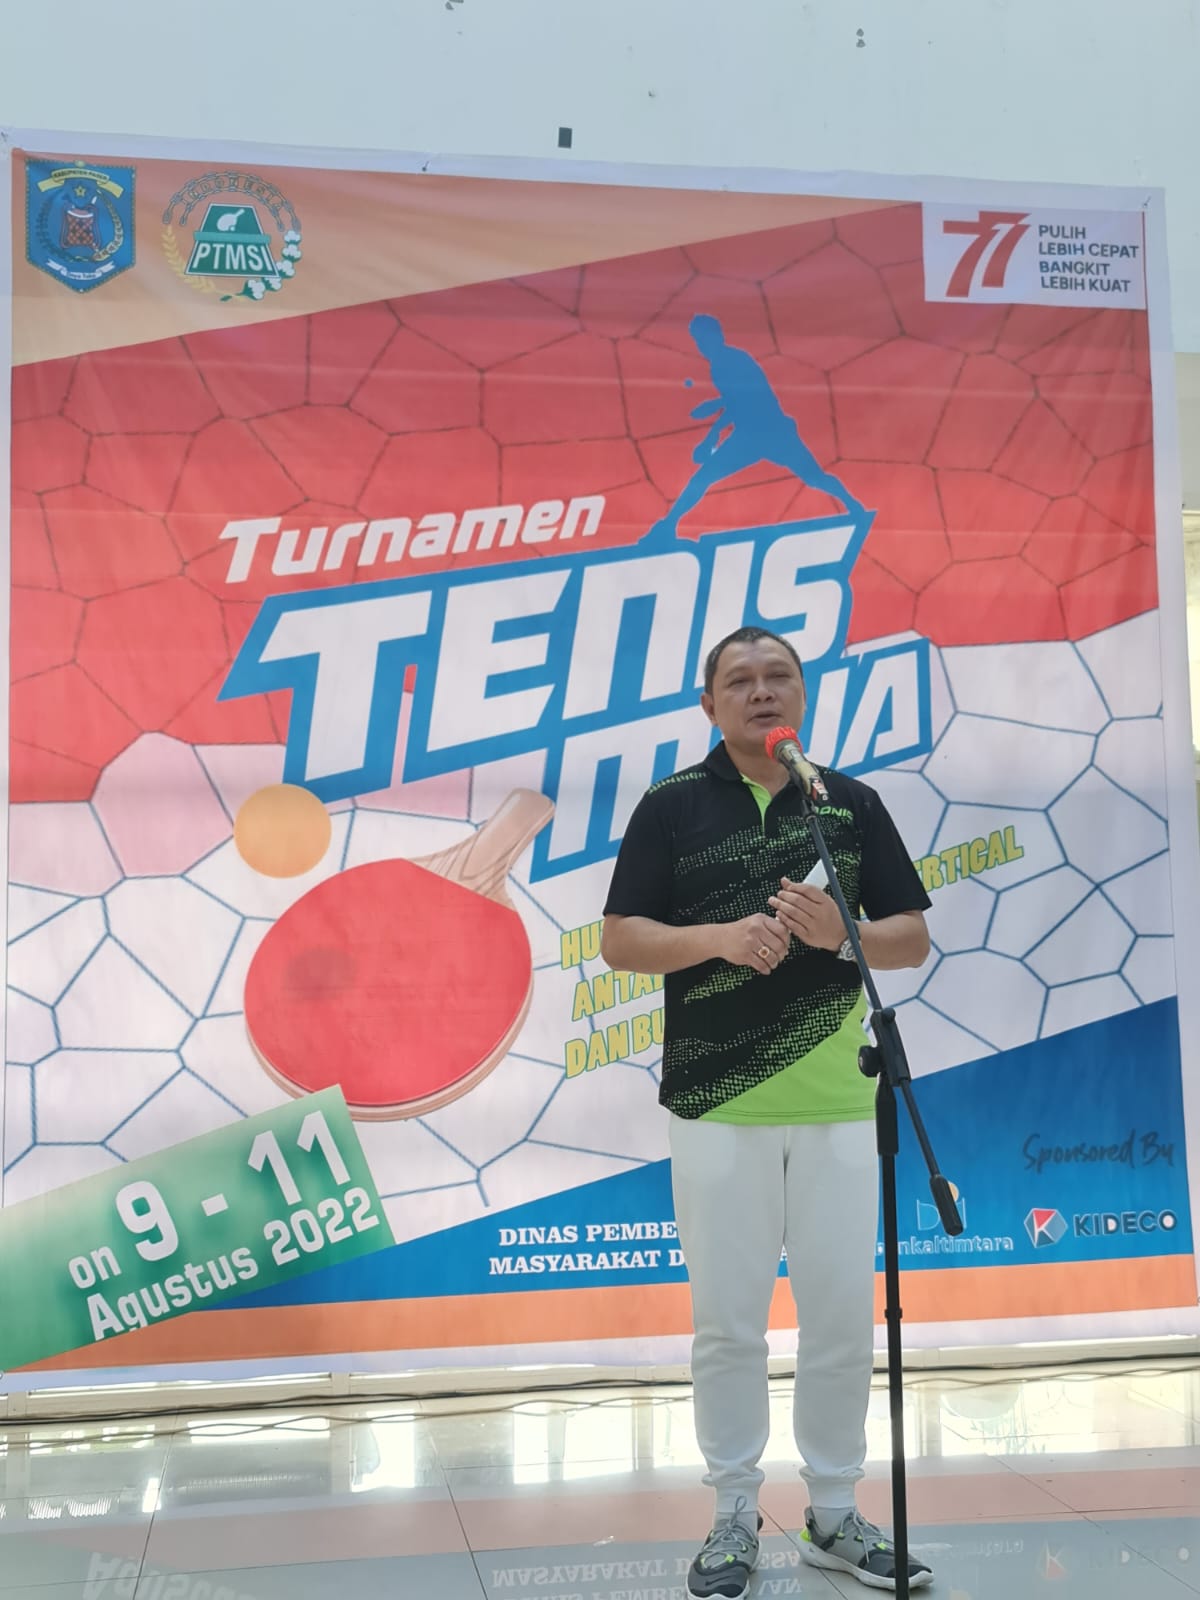 Turnamen Tenis Meja Kemerdekaan Resmi Dibuka Bupati Paser